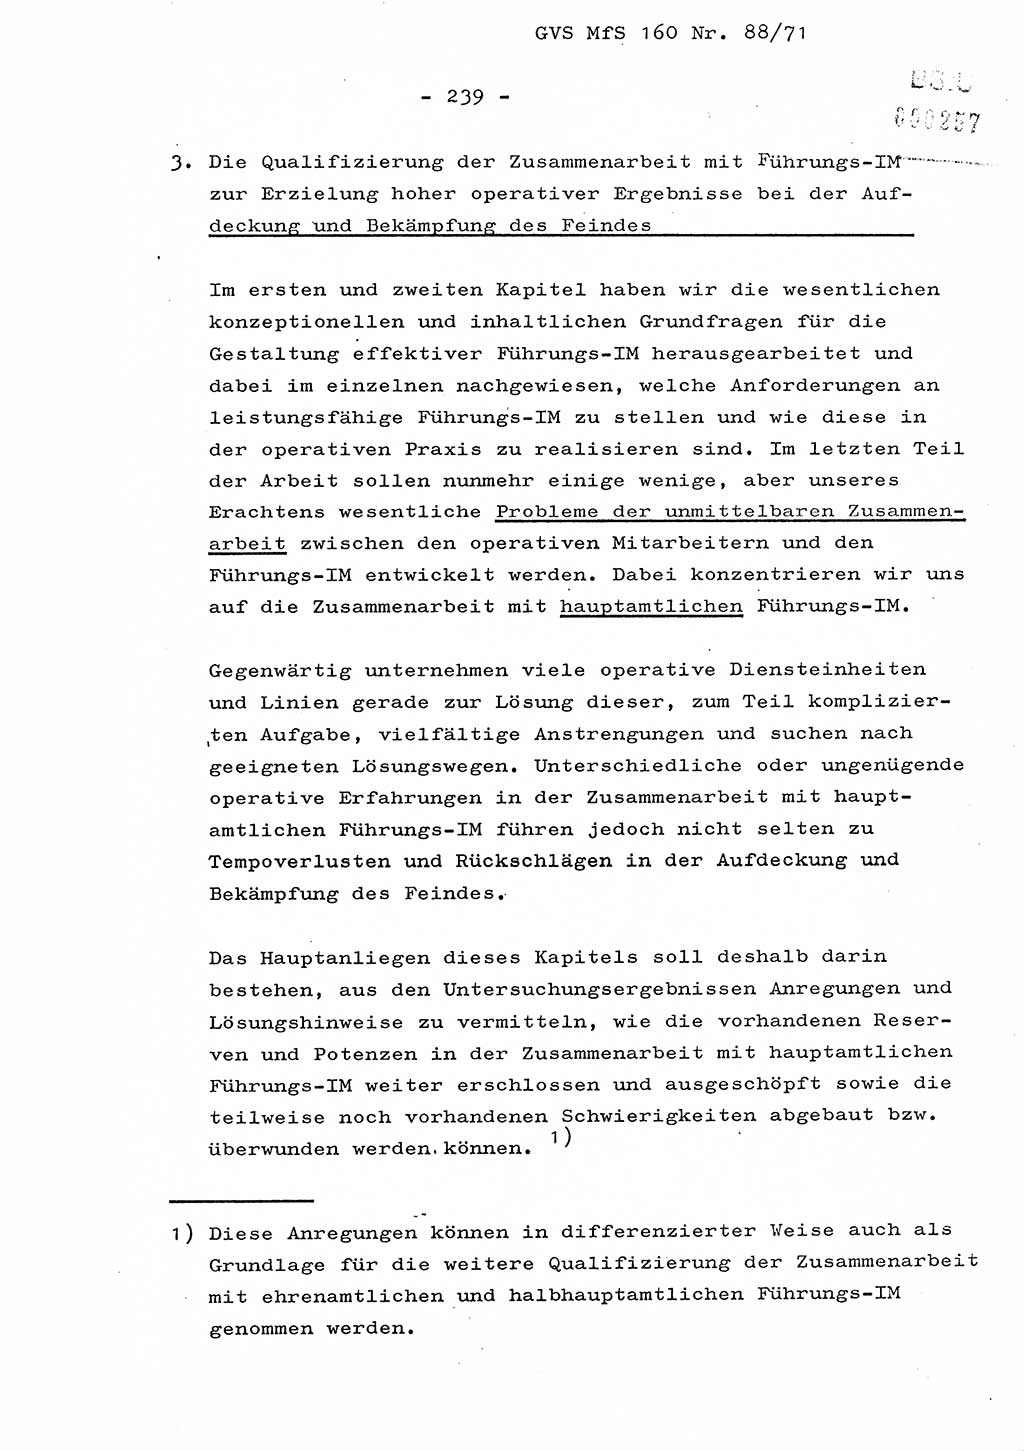 Dissertation Oberstleutnant Josef Schwarz (BV Schwerin), Major Fritz Amm (JHS), Hauptmann Peter Gräßler (JHS), Ministerium für Staatssicherheit (MfS) [Deutsche Demokratische Republik (DDR)], Juristische Hochschule (JHS), Geheime Verschlußsache (GVS) 160-88/71, Potsdam 1972, Seite 239 (Diss. MfS DDR JHS GVS 160-88/71 1972, S. 239)